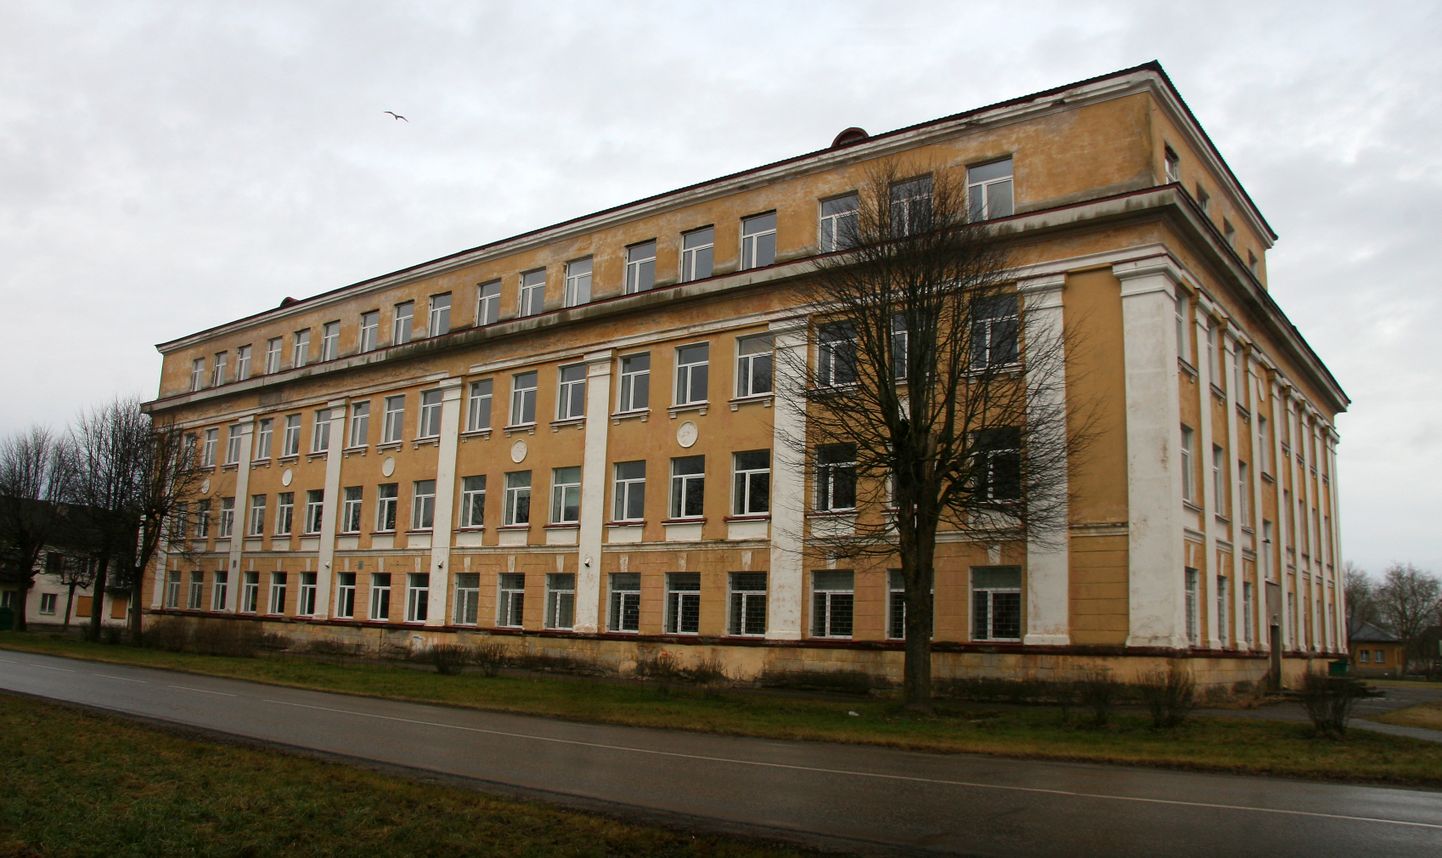 Здание бывшей начальной школы в Ахтме, двери которой закрылись пять лет назад, возможно, скоро станет съемочной площадкой.